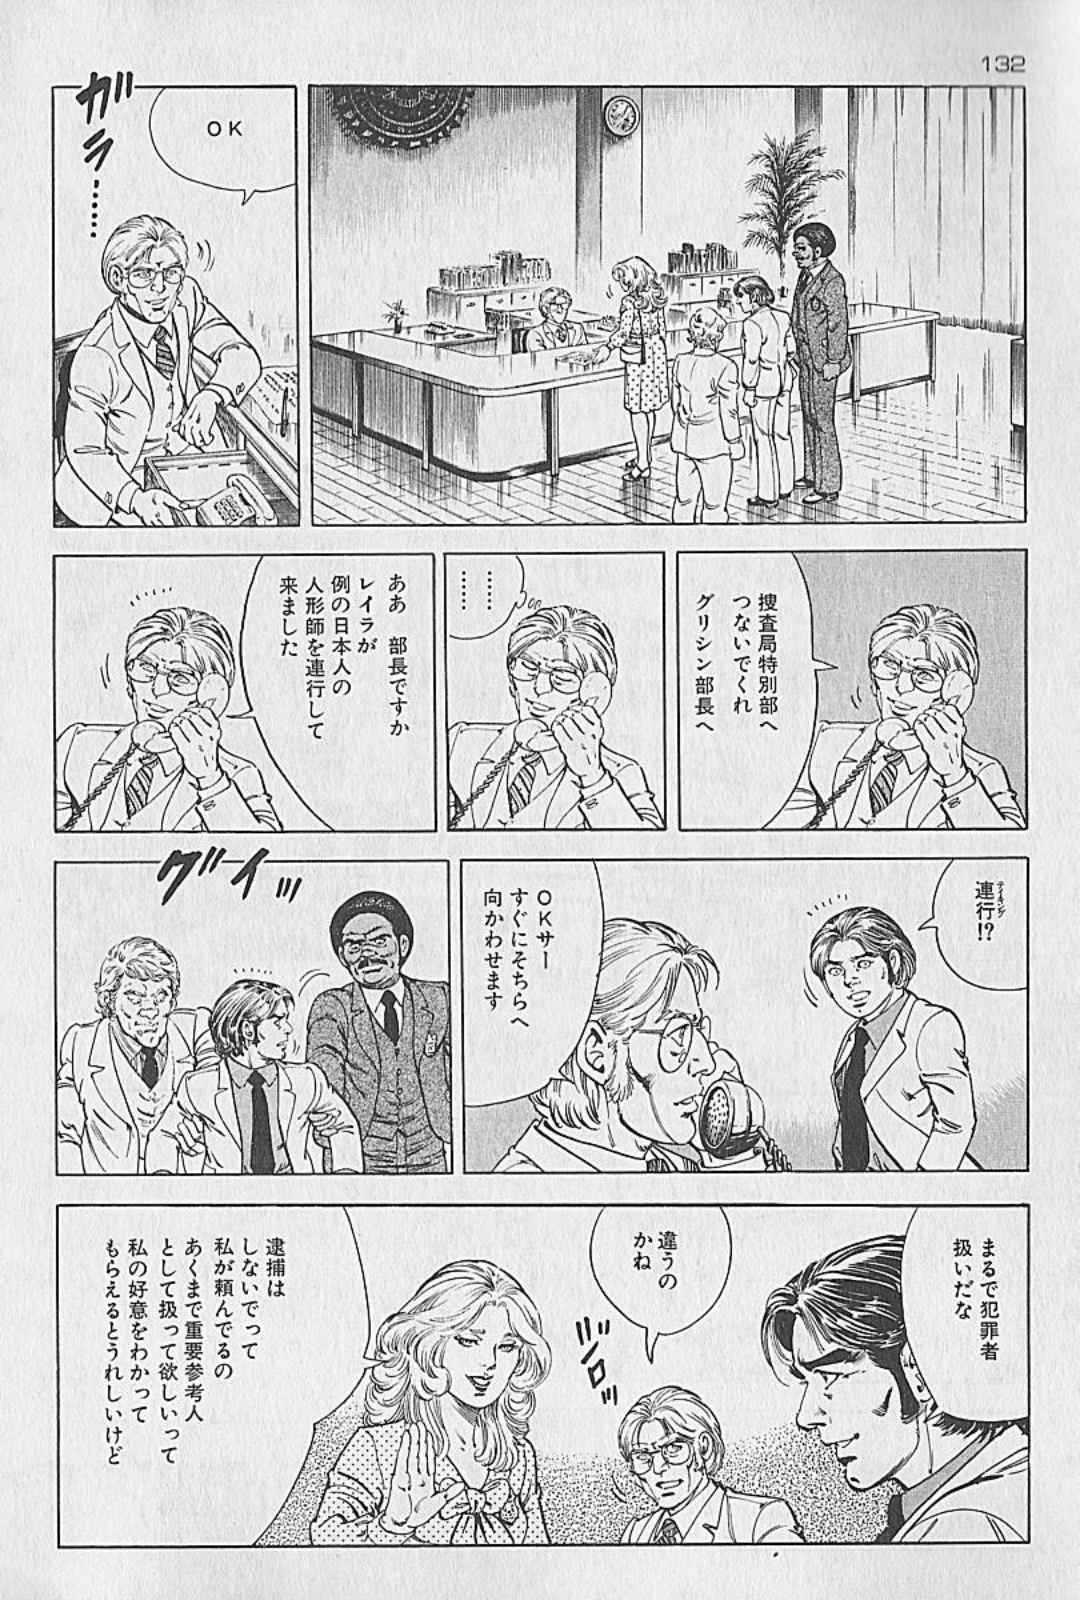 [Kano Seisaku, Koike Kazuo] Jikken Ningyou Dummy Oscar Vol.10 [叶精作, 小池一夫] 実験人形ダミー・オスカー 第10巻